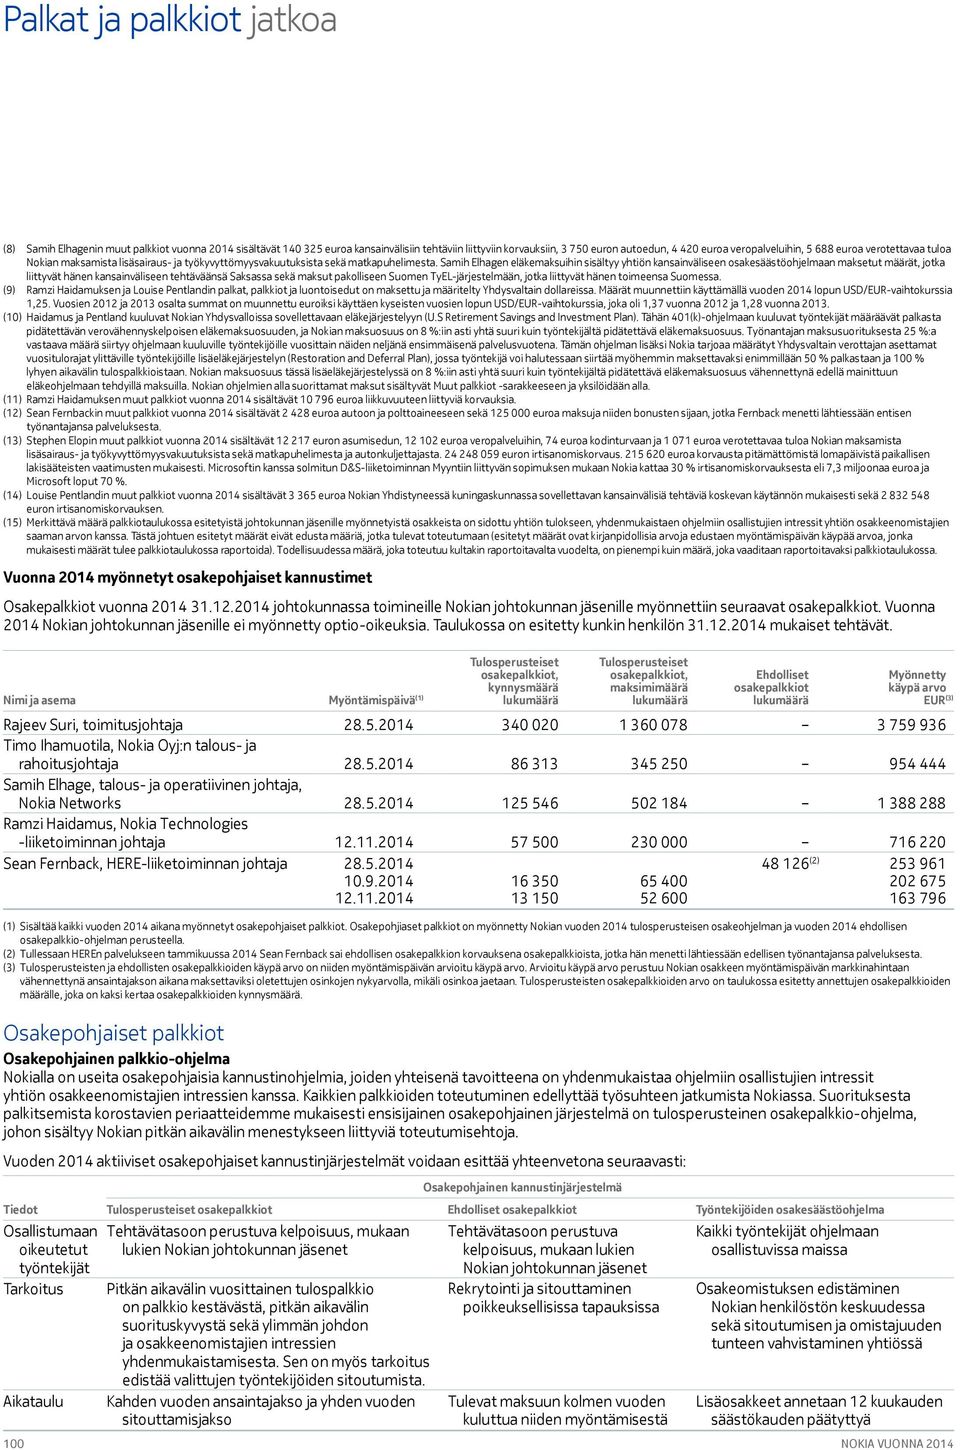 Samih Elhagen eläkemaksuihin sisältyy yhtiön kansainväliseen osakesäästöohjelmaan maksetut määrät, jotka liittyvät hänen kansainväliseen tehtäväänsä Saksassa sekä maksut pakolliseen Suomen